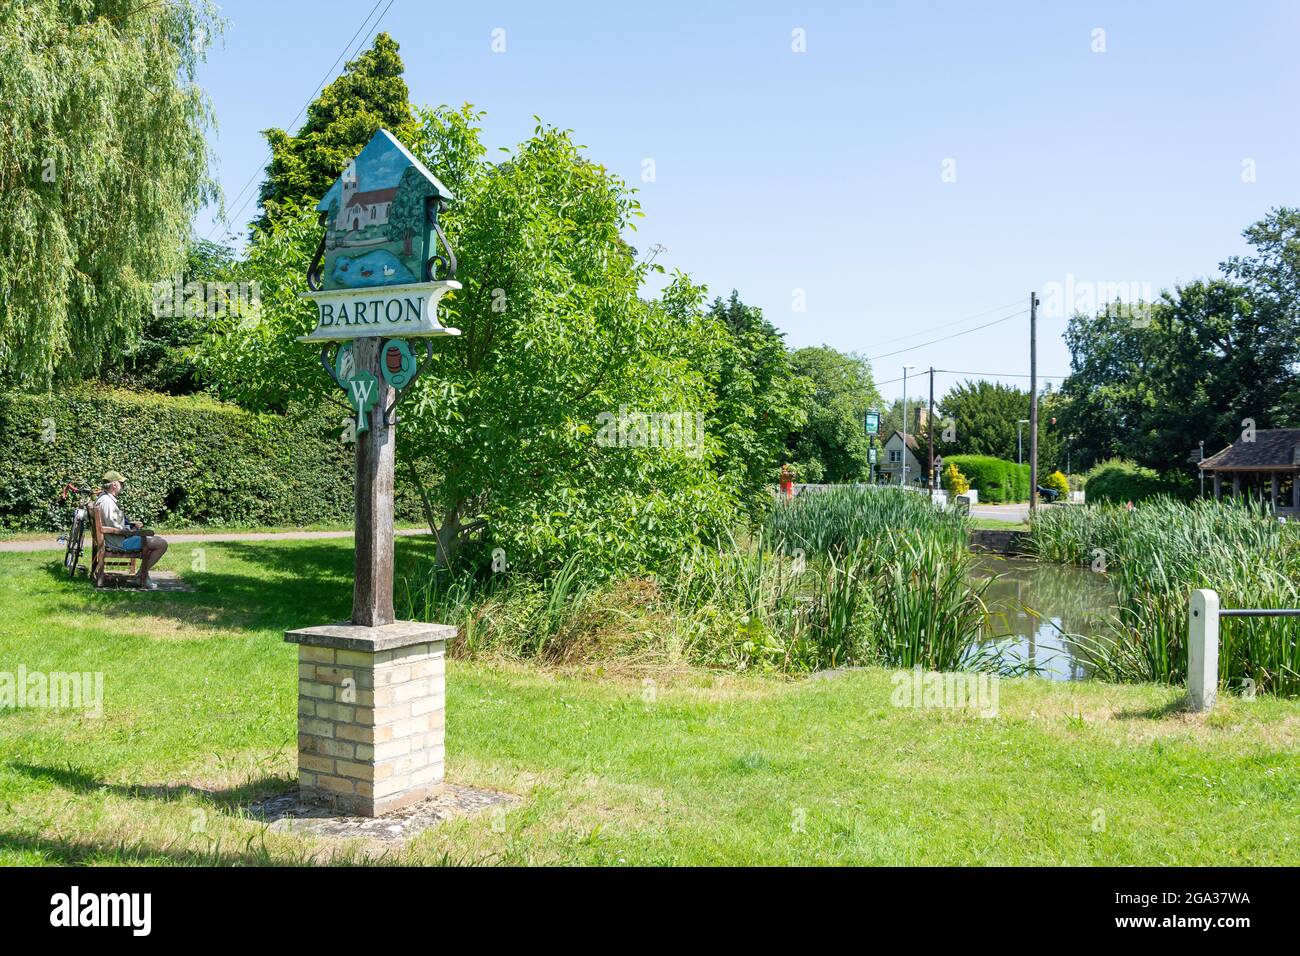 Barton villaggio stagno e segno, Barton, Cambridgeshire, Inghilterra, Regno Unito Foto Stock